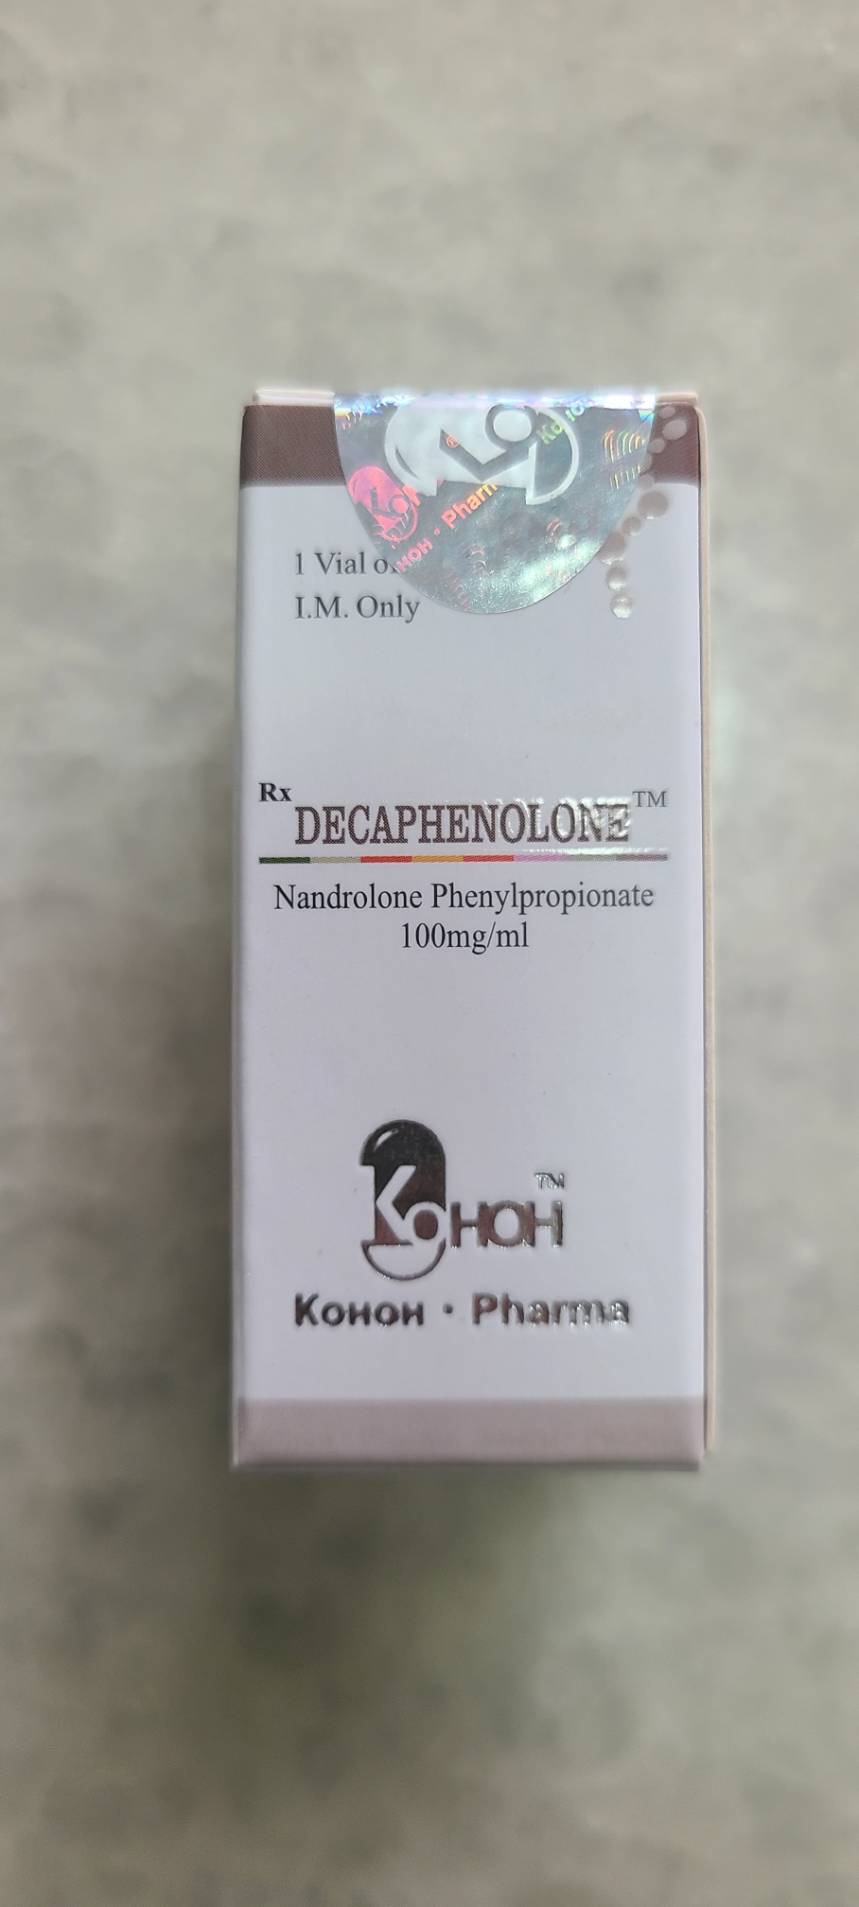 【セール】Kohohpharma Decaphenolone 100mg/ml